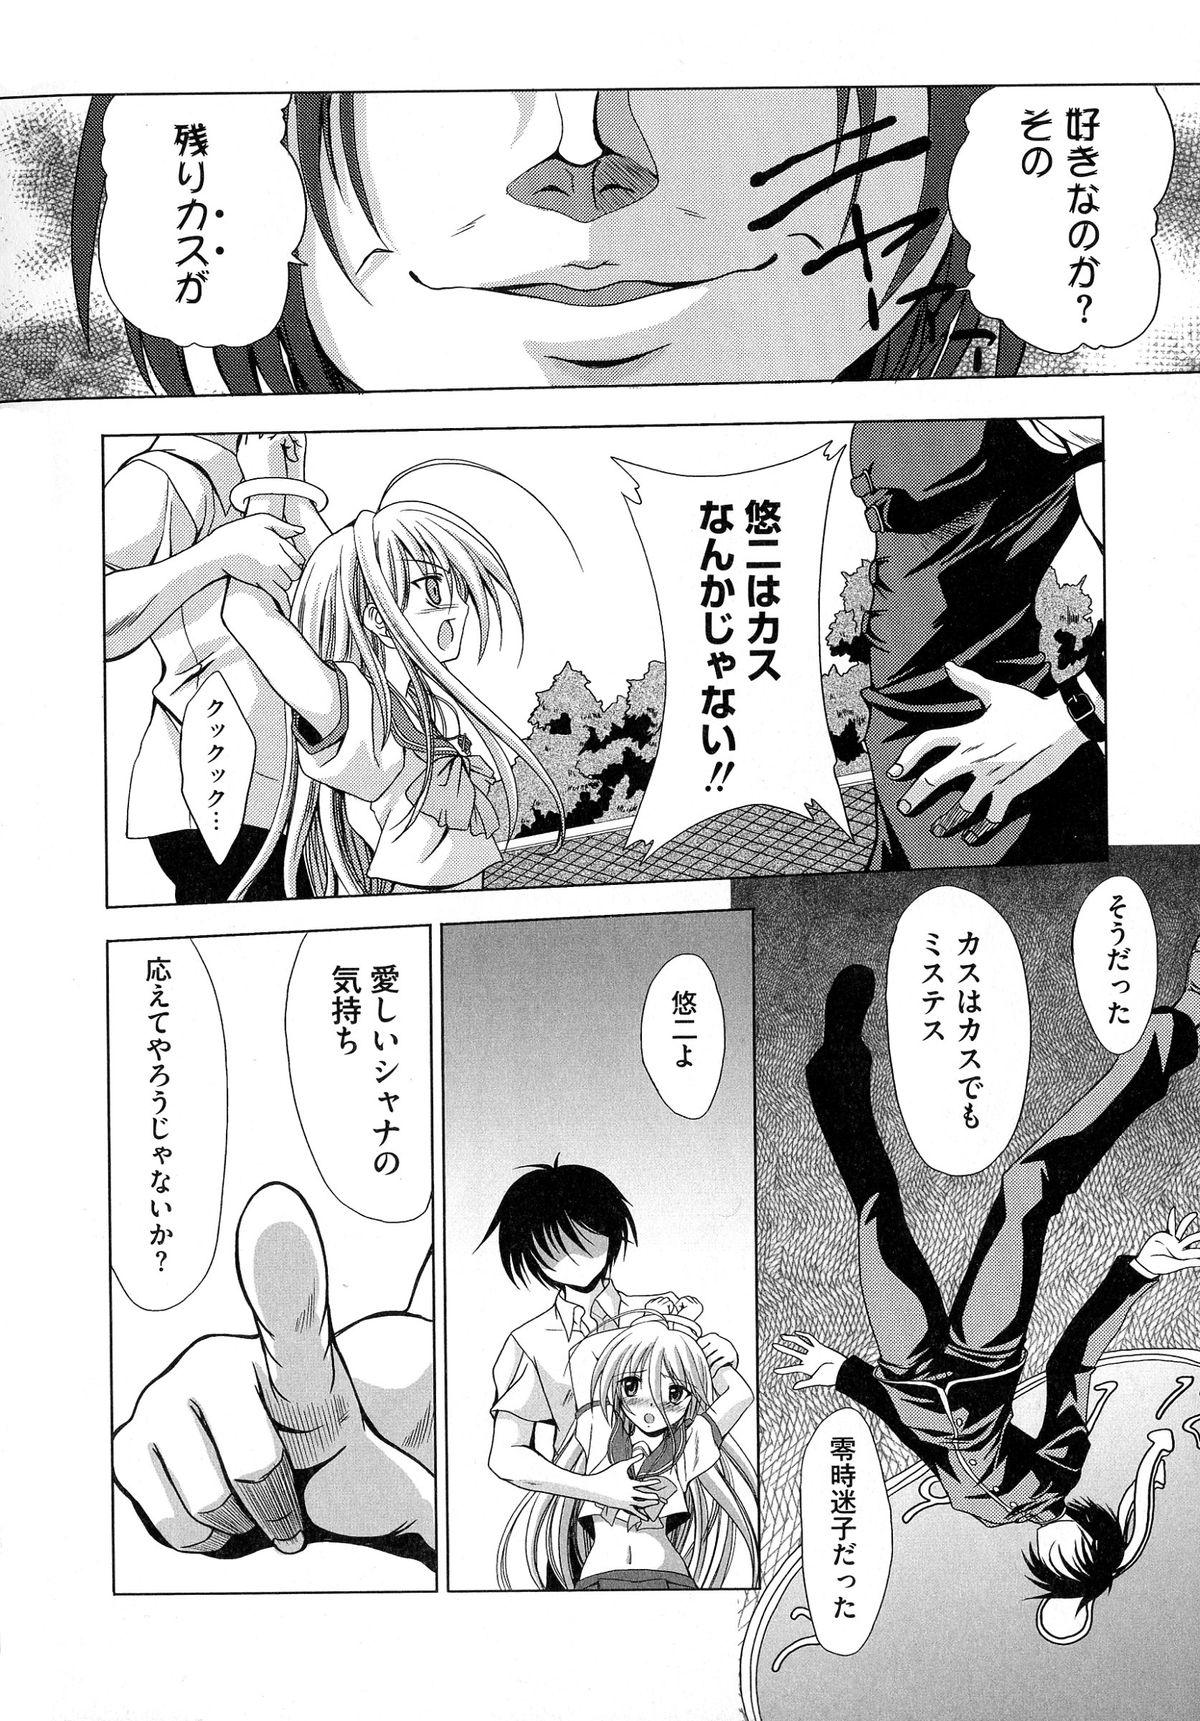 Submissive Engan Shoujo no Shuujoku - Shakugan no shana Trimmed - Page 6